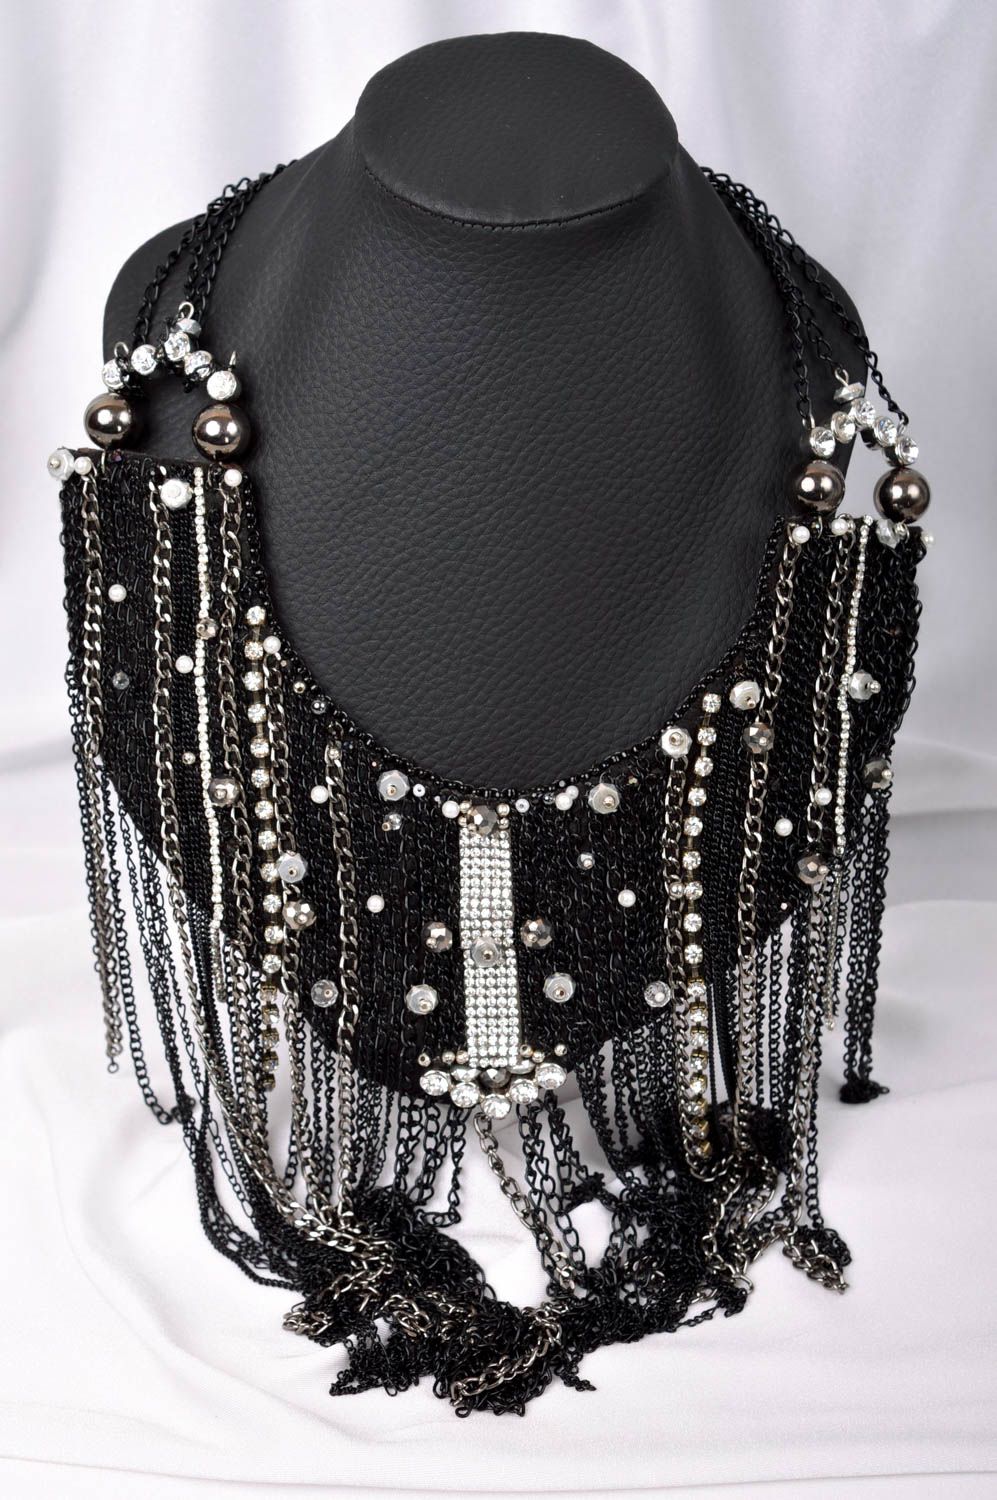 Collier noir en chaînes Bijou fait main avec strass et cristaux Cadeau femme photo 1